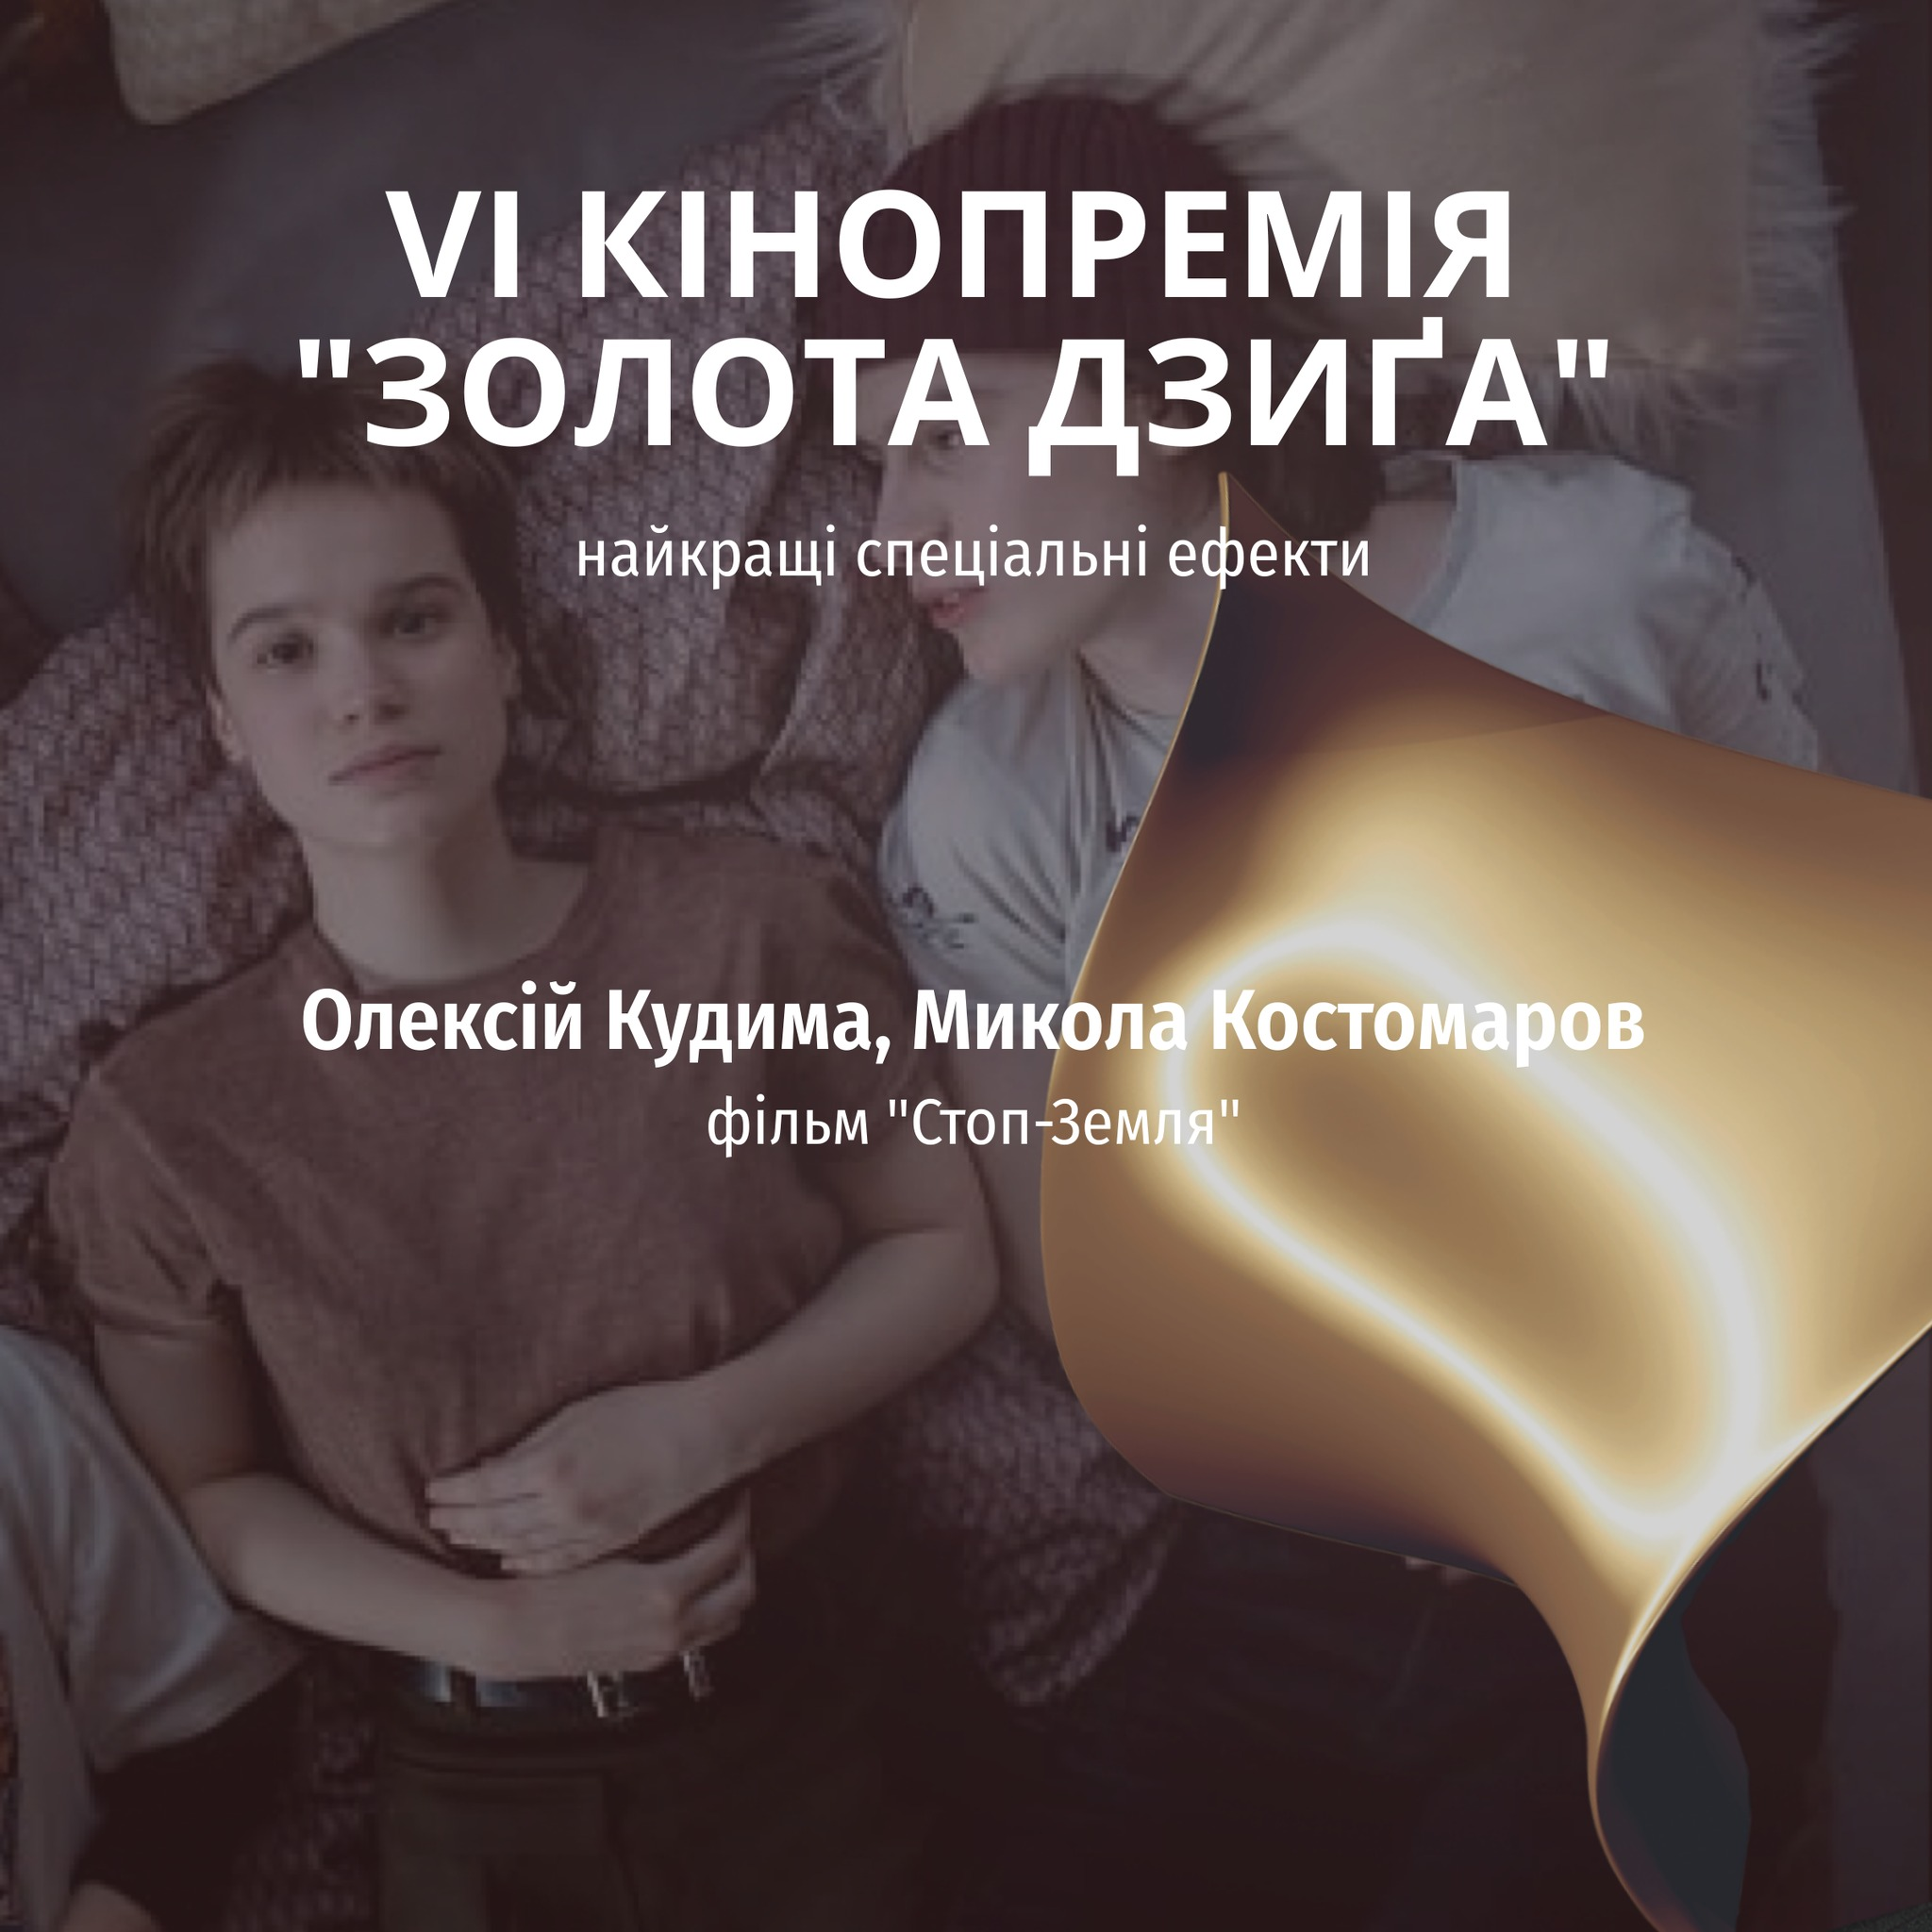 Украинская киноакадемия раскрыла имя победителей.